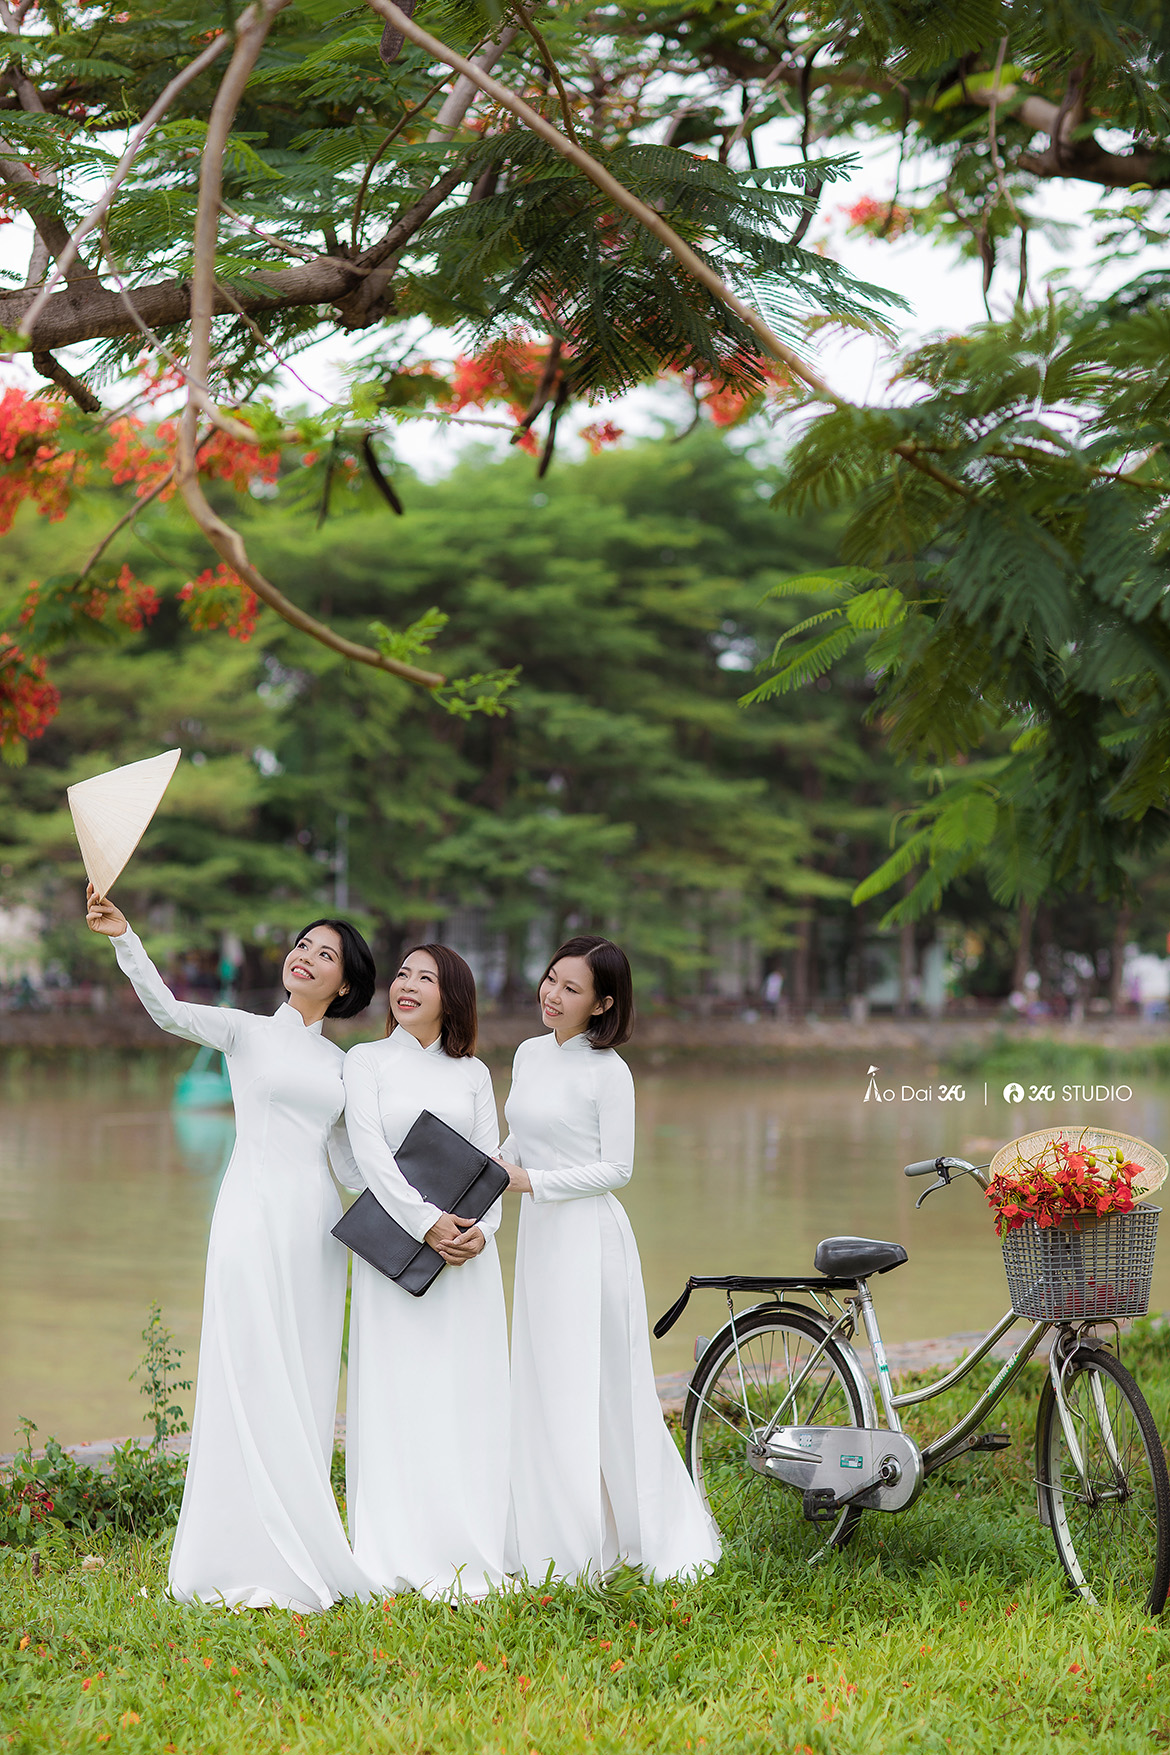 Áo dài hoa phượng là biểu tượng của sự nữ tính, yêu đời và tôn vinh vẻ đẹp của phụ nữ Việt Nam. Hãy xem hình ảnh này để chiêm ngưỡng áo dài hoa phượng được thiết kế tinh tế và lộng lẫy để tôn vinh vẻ đẹp của phụ nữ Việt Nam.